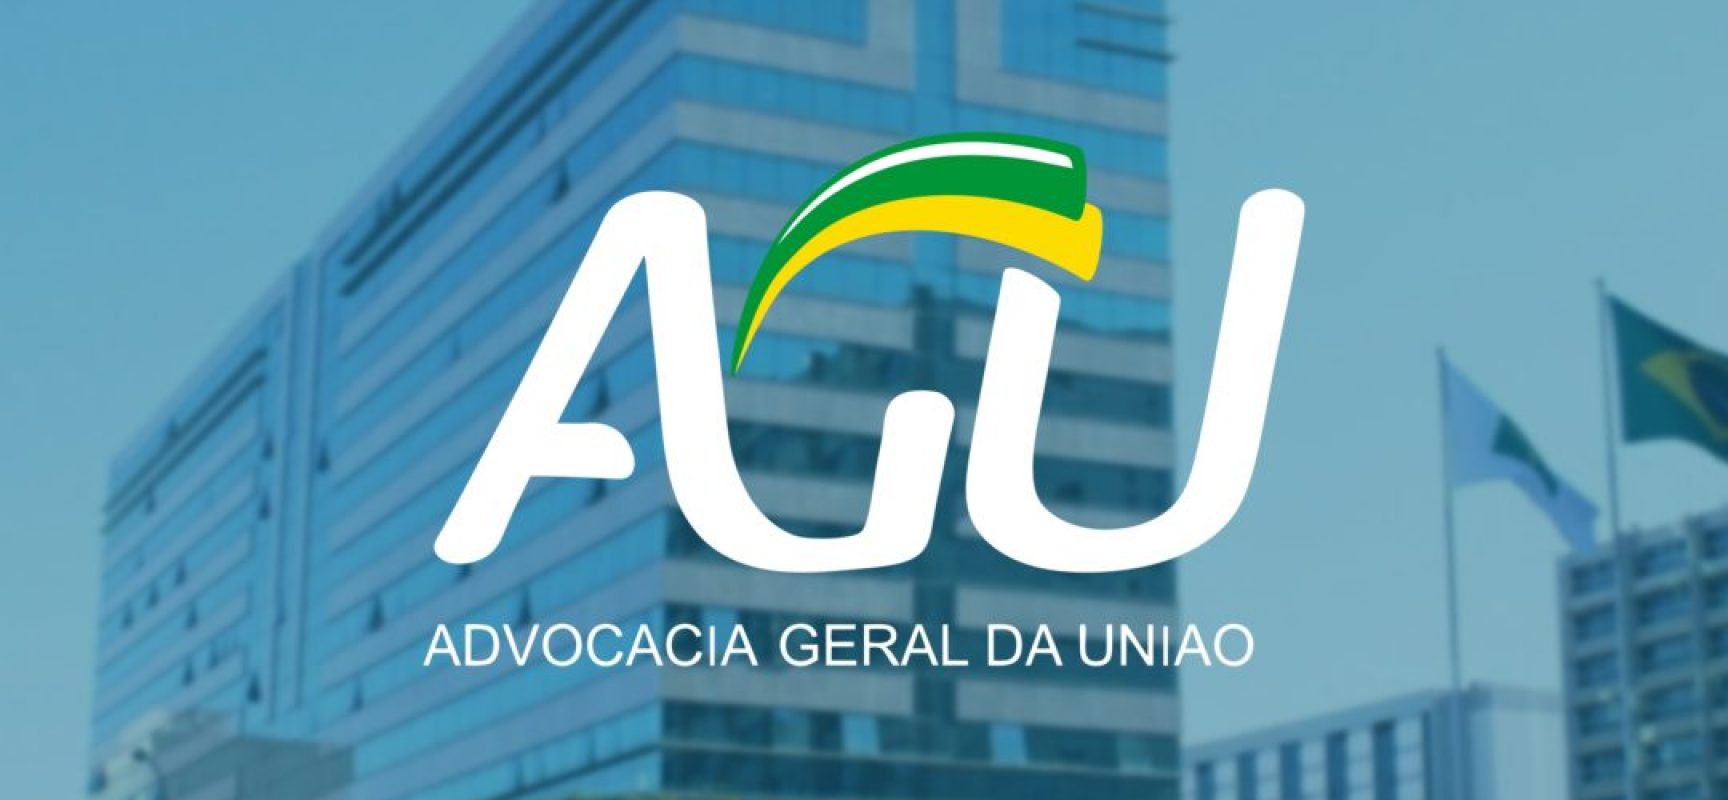 Camargo Corrêa assina acordo de leniência com AGU e CGU